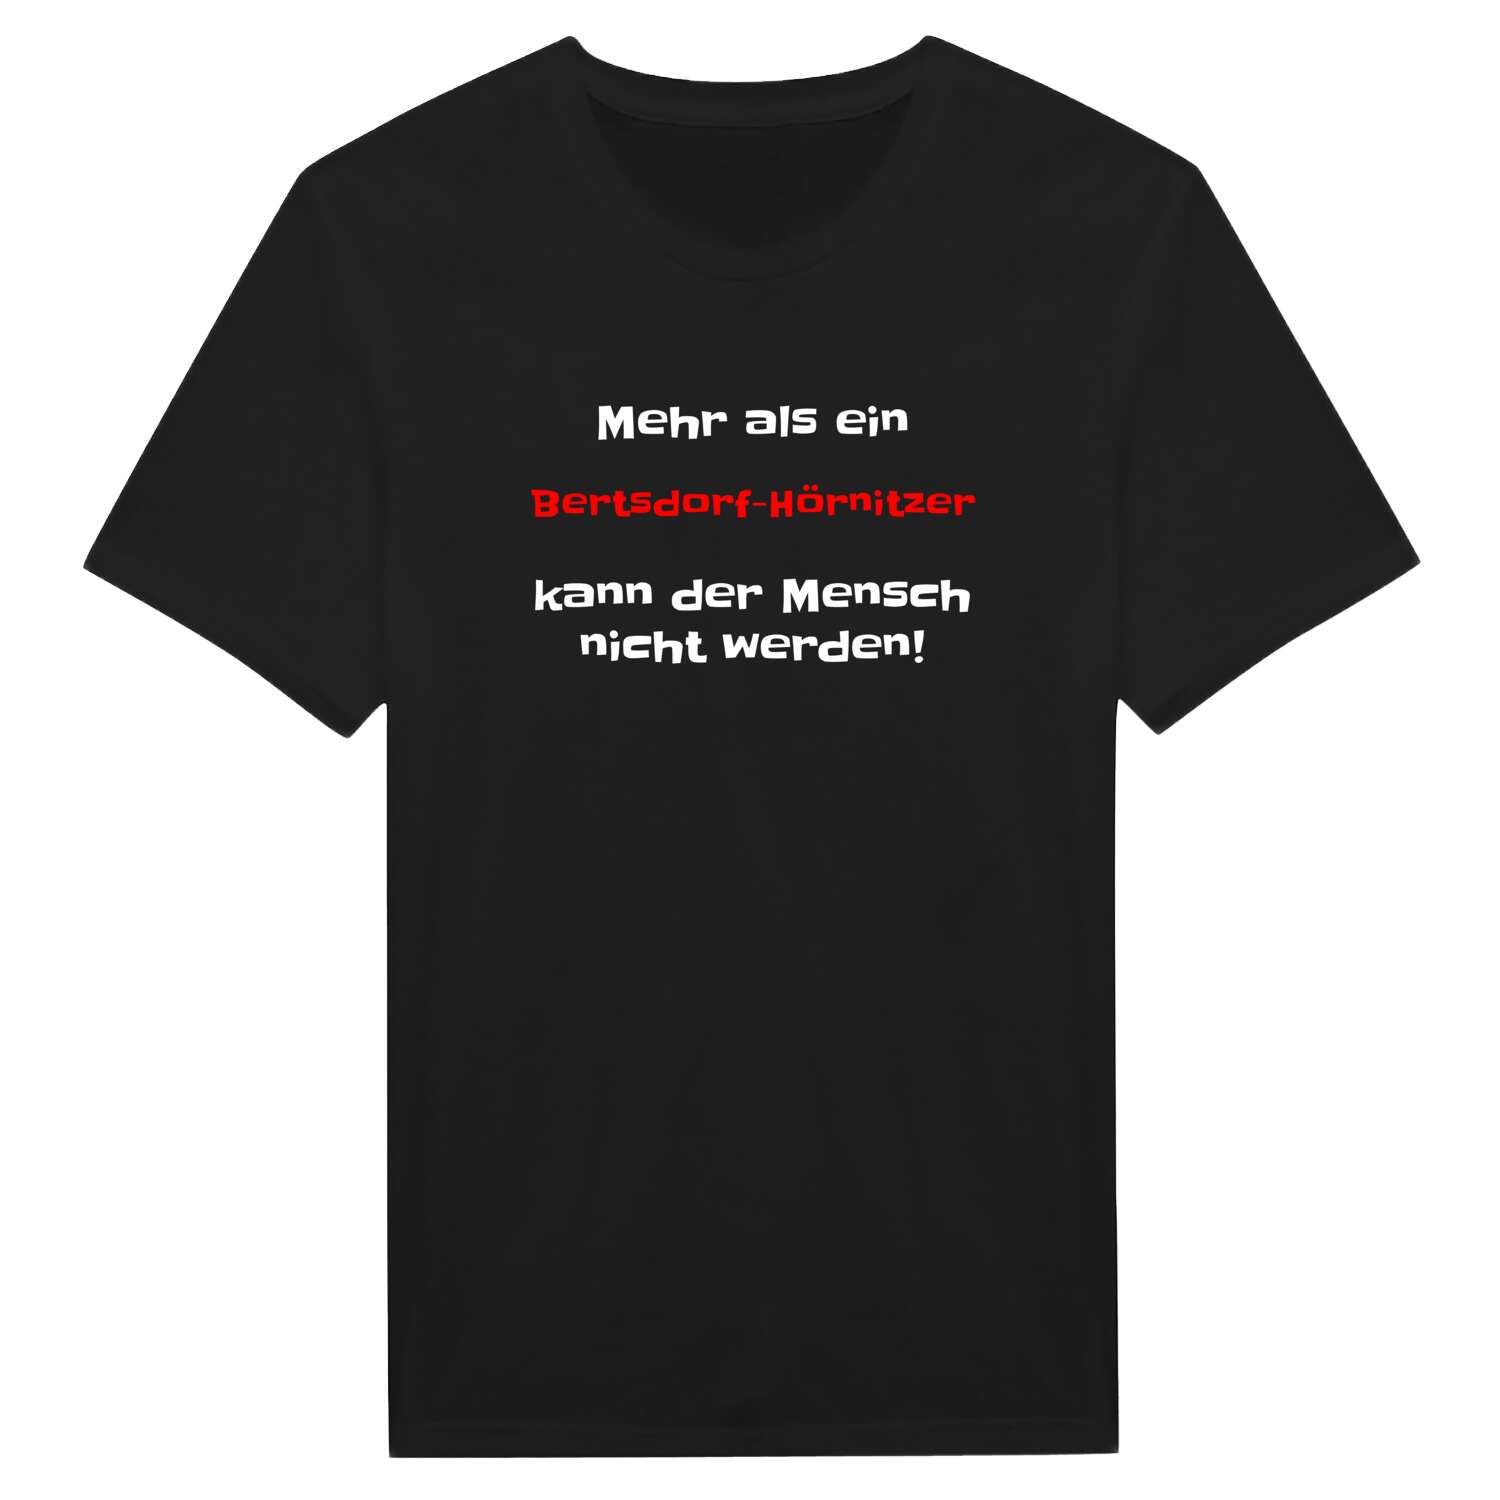 Bertsdorf-Hörnitz T-Shirt »Mehr als ein«